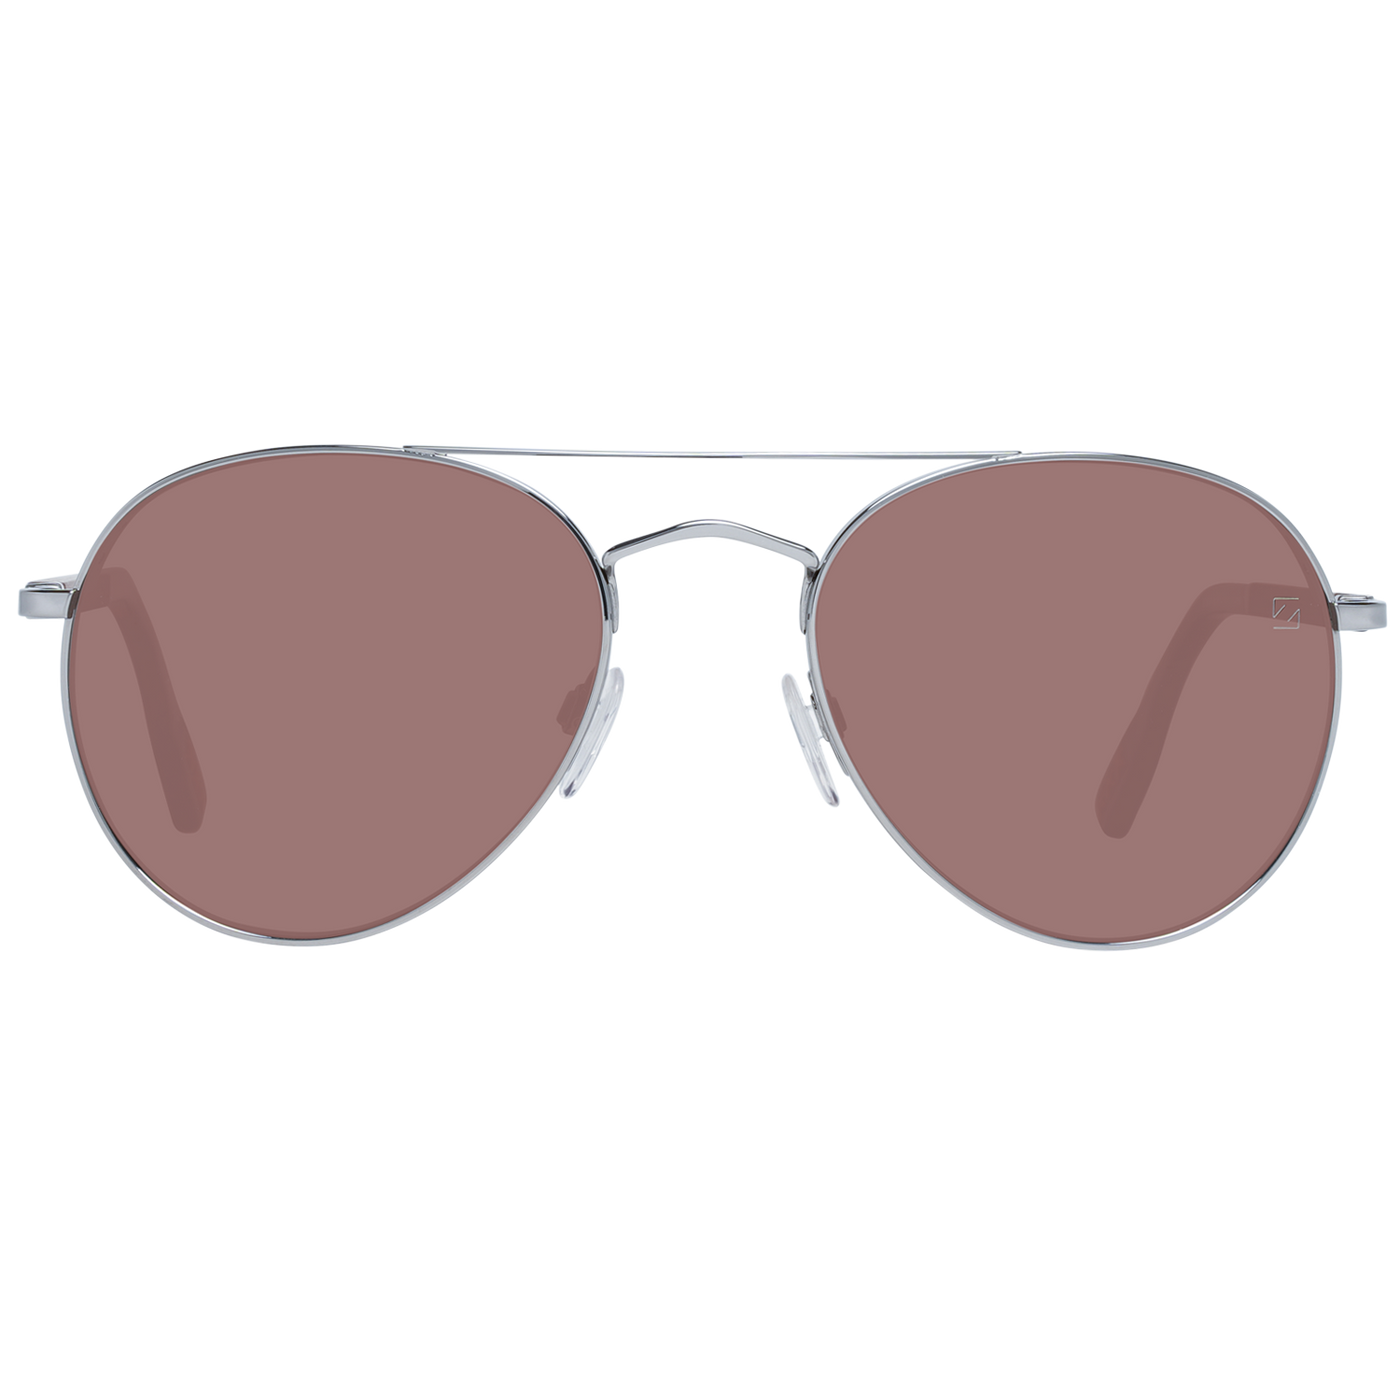 Zegna couture Gray Men Sunglasses